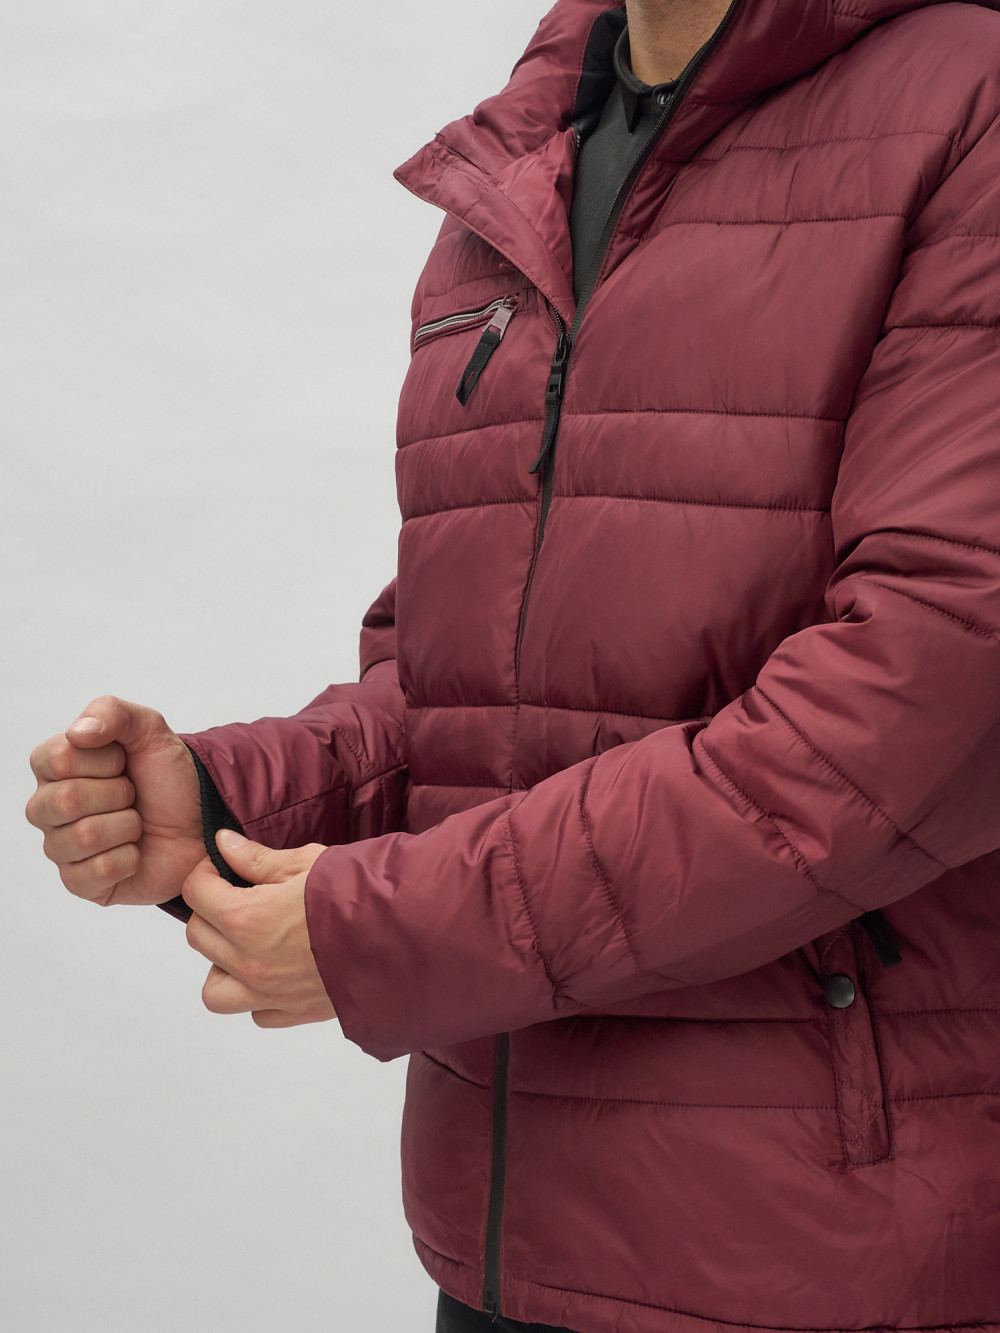 Купить куртку мужскую спортивную весеннюю оптом от производителя недорого в Москве 62175Bo 1